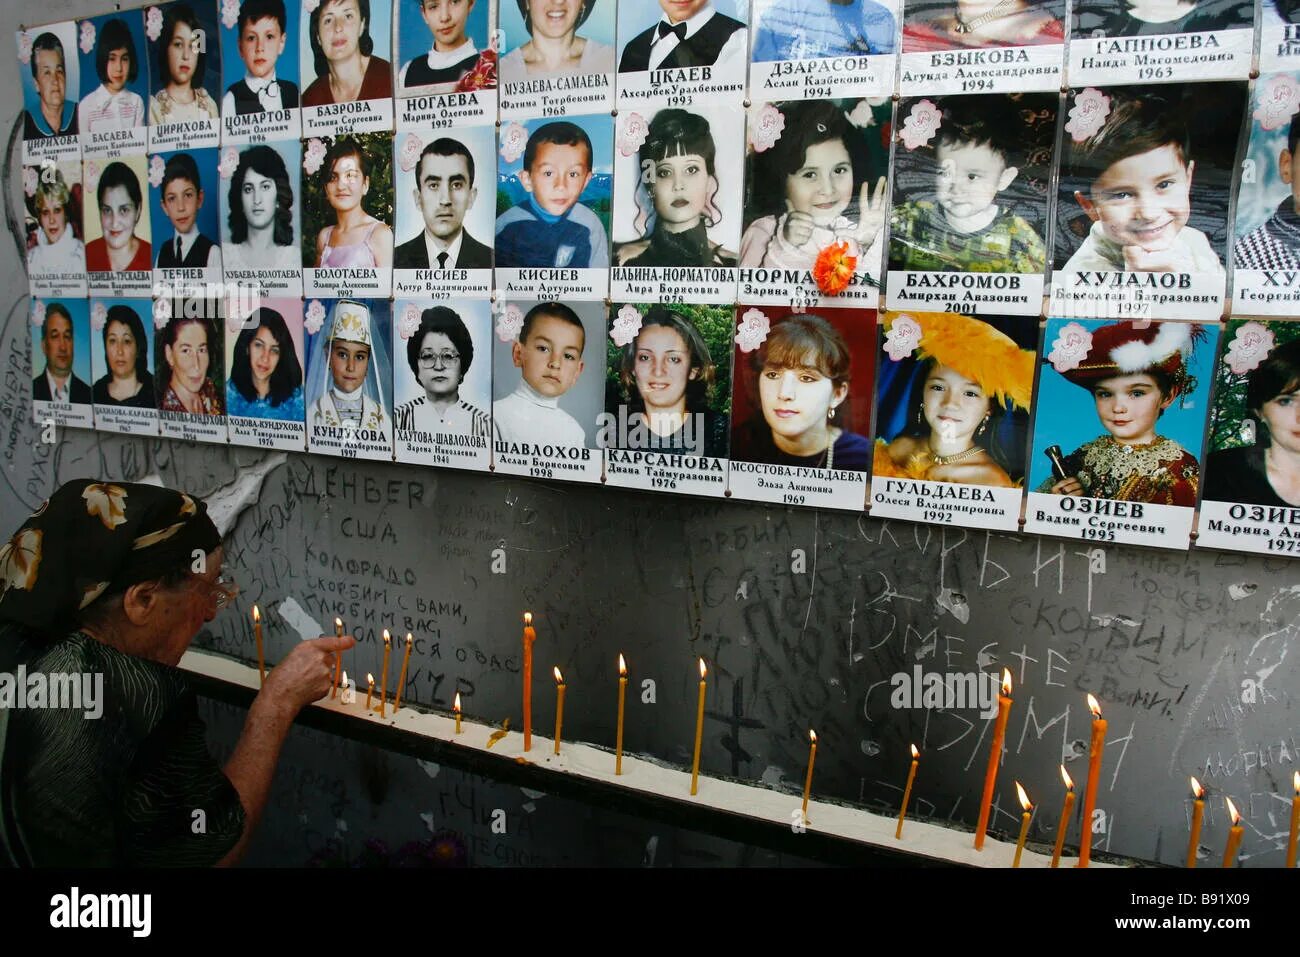 Беслан теракт в школе сколько погибло детей. Дети Беслана 1 сентября 2004. Беслан 2004 год школа теракт.